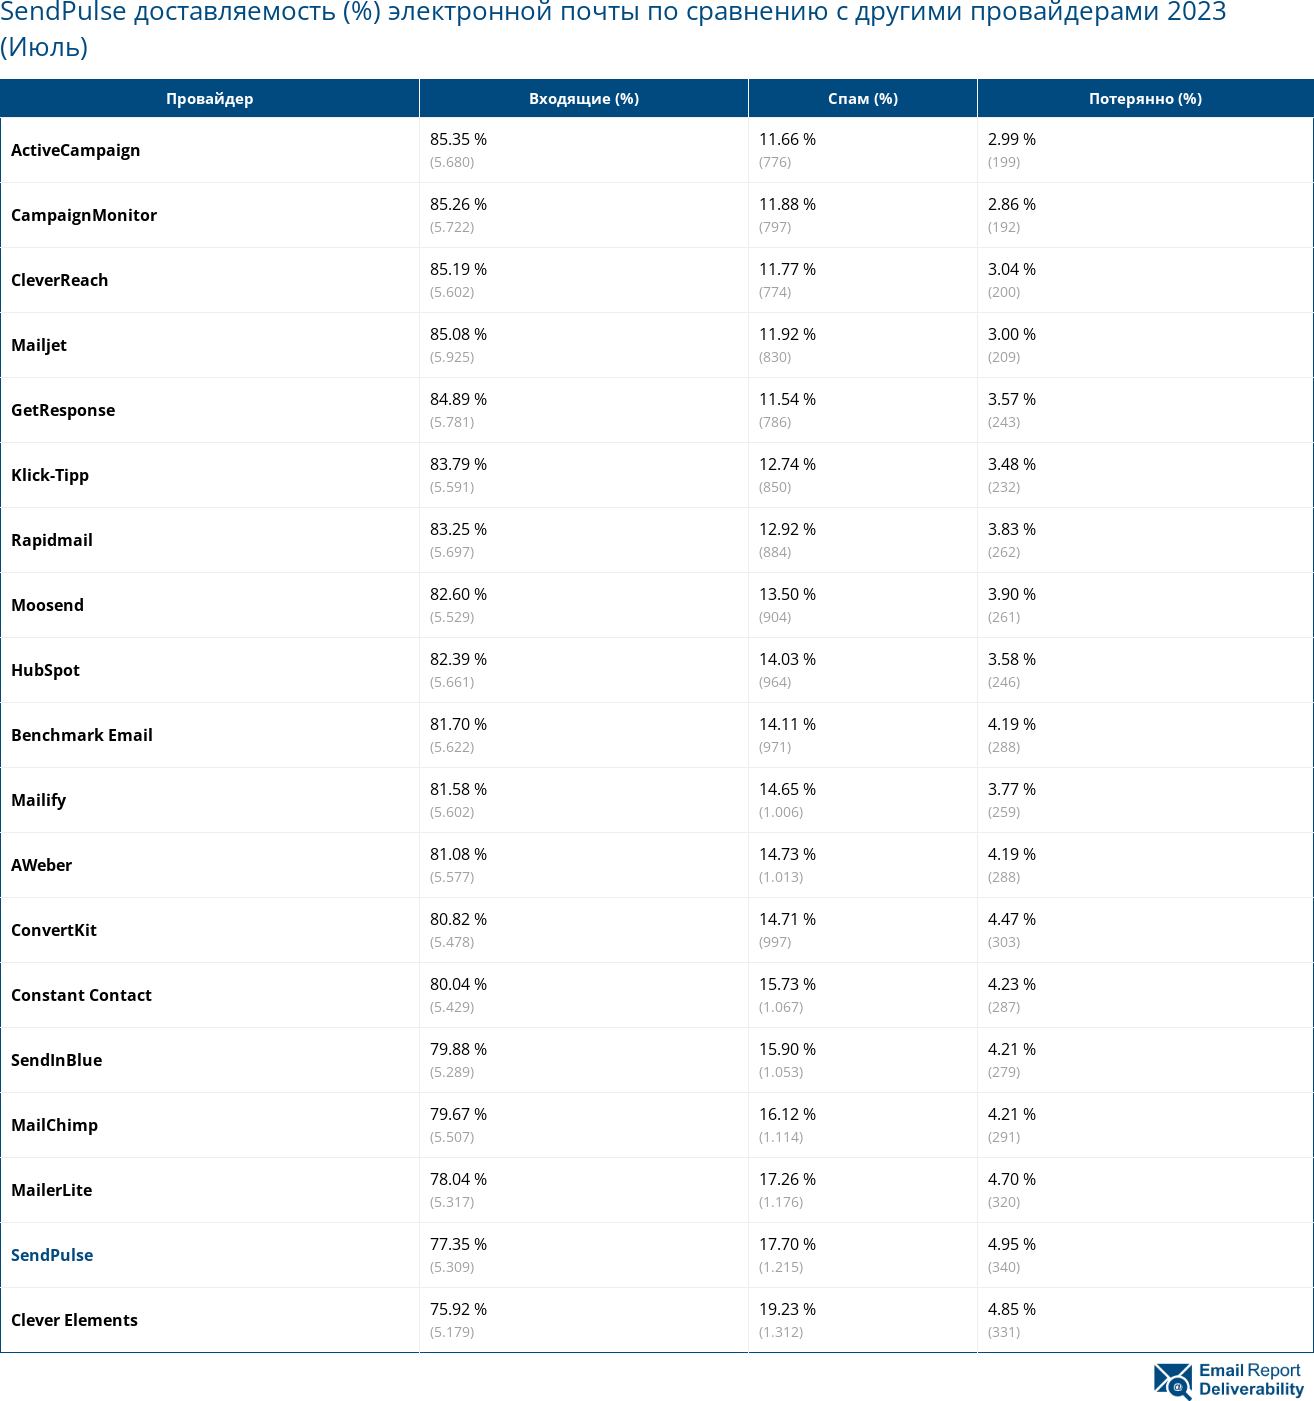 SendPulse доставляемость (%) электронной почты по сравнению с другими провайдерами 2023 (Июль)